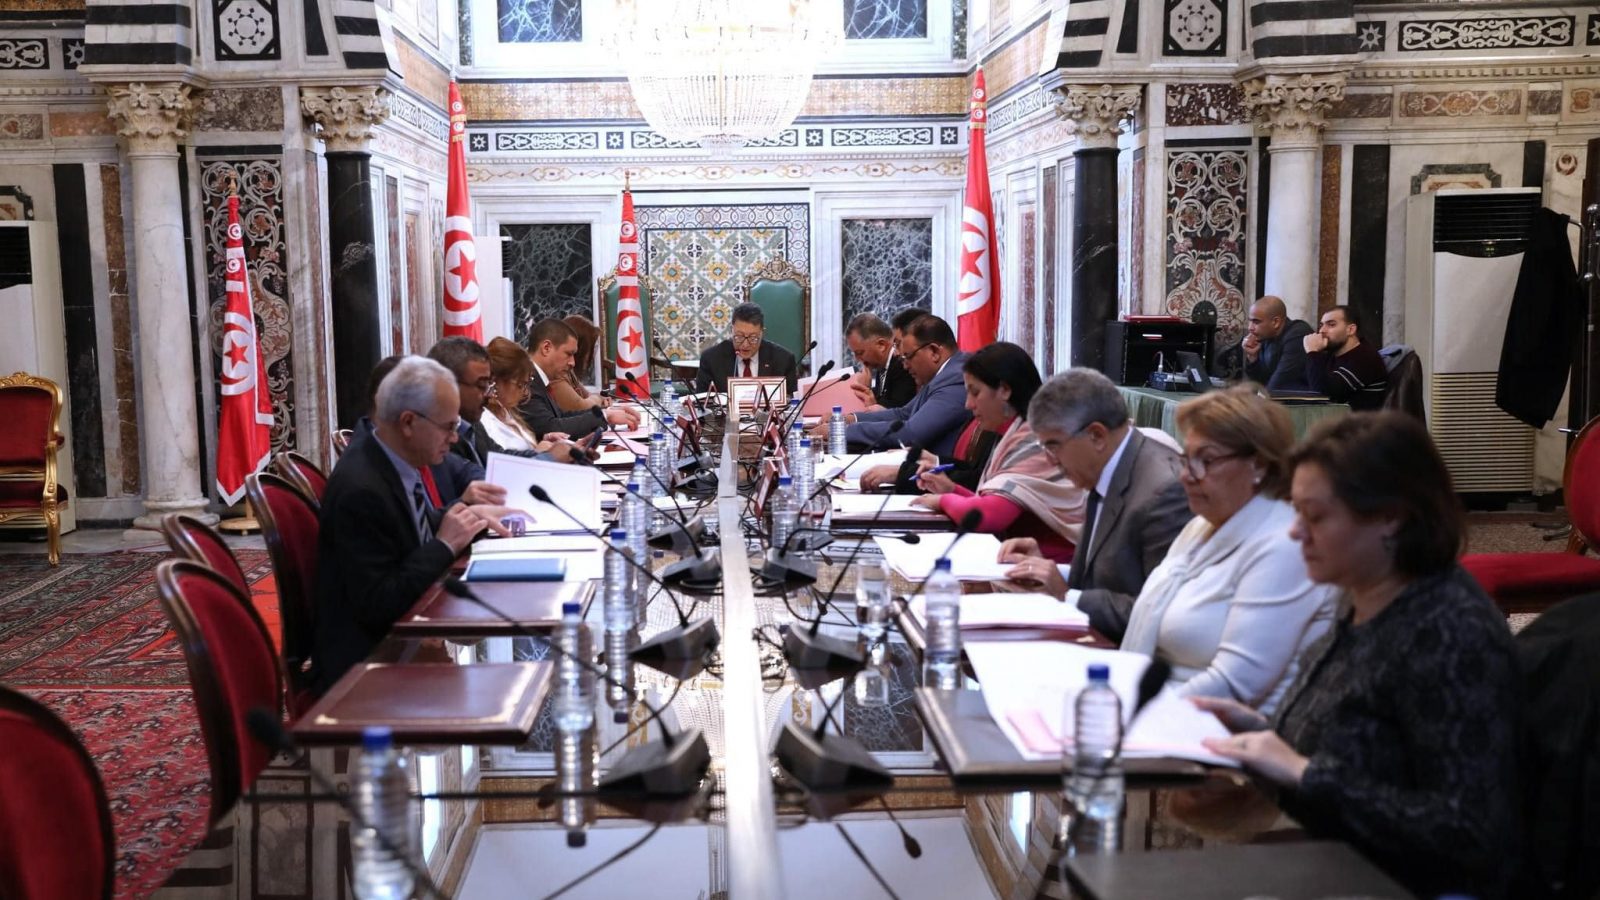 احدها خلاف بين نائبتين/ برنامج محاور اجتماع مكتب البرلمان (التفاصيل لـ”تونس الان”)